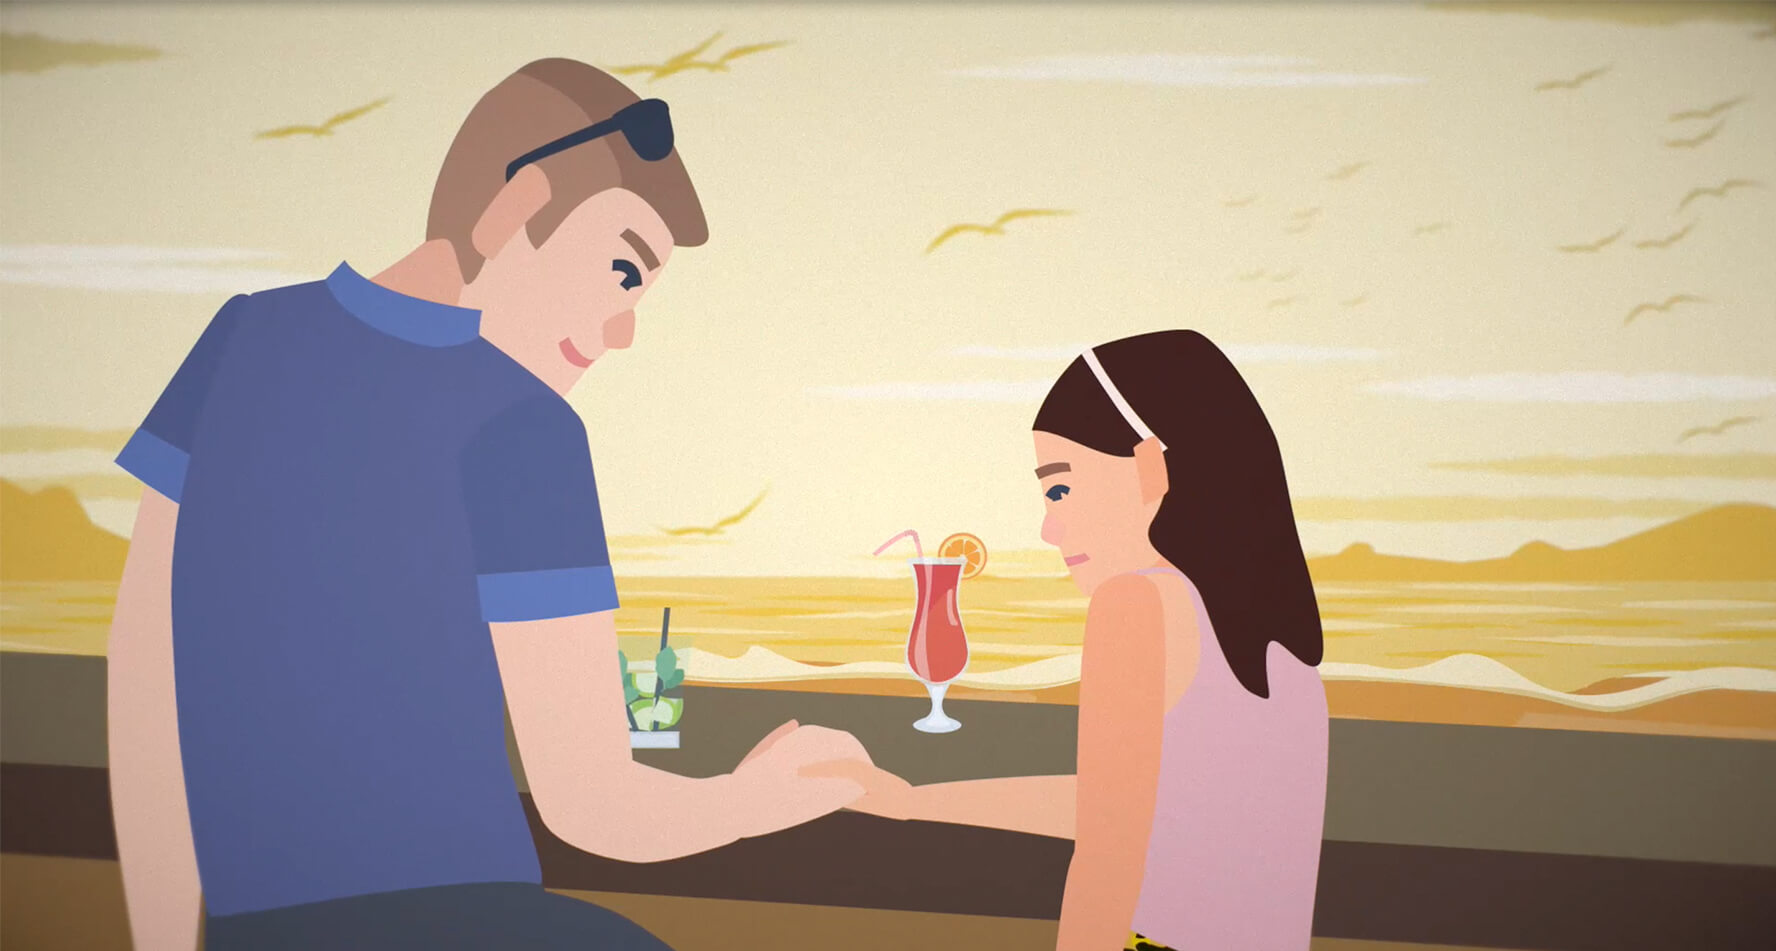 Ein Mann und ein Mädchen trinken an einer Bar einen Cocktail. Der Mann hält die Hand des Mädchens